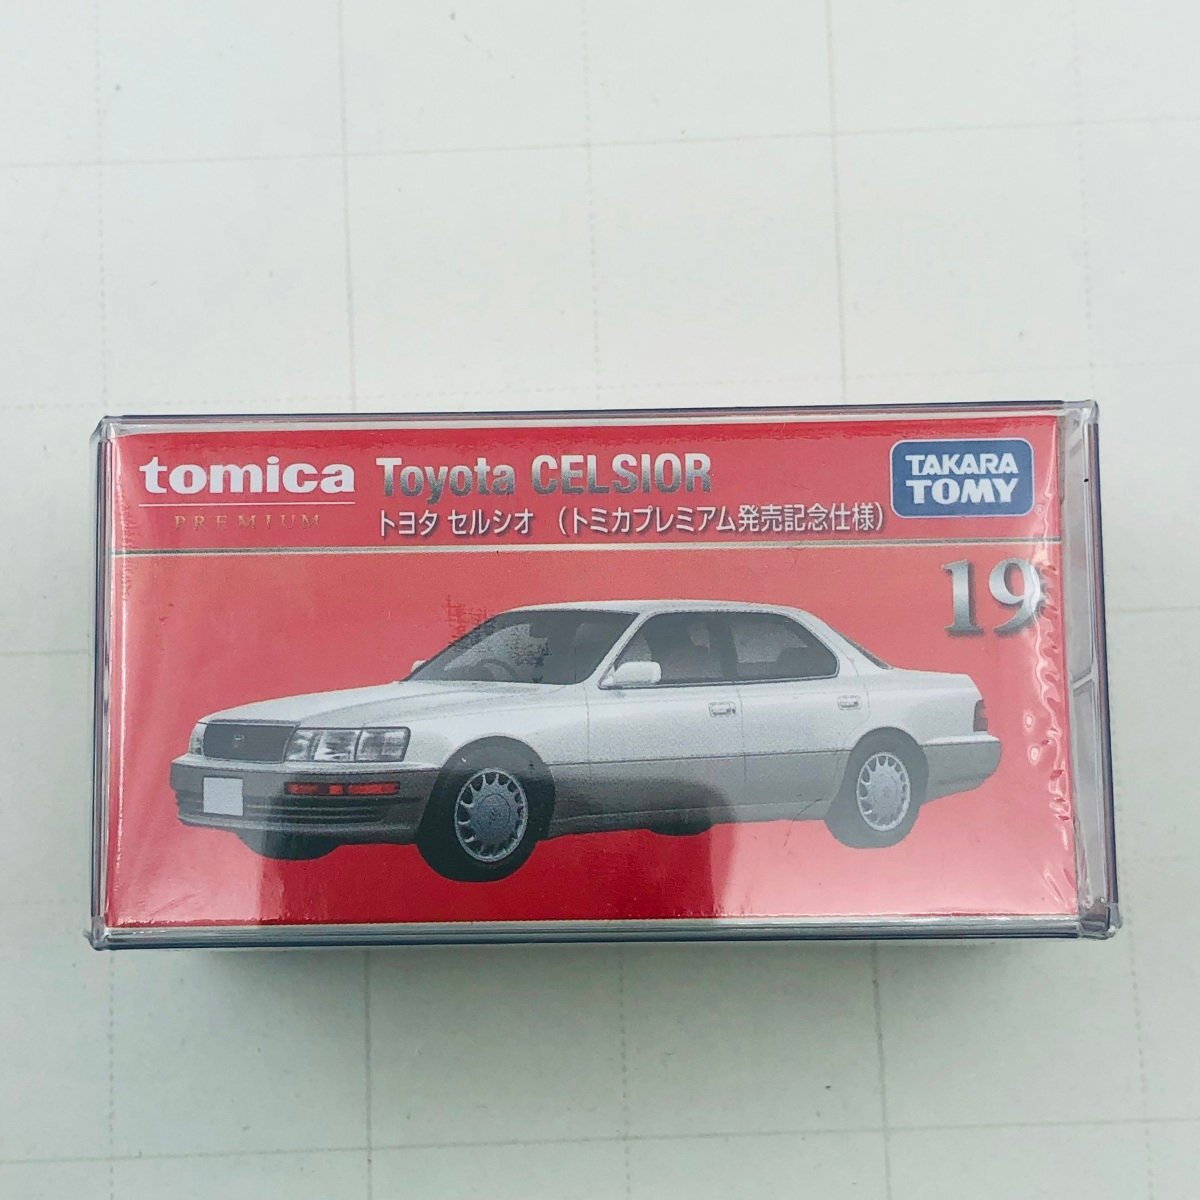 新品未開封 タカラトミー トミカ プレミアム 発売記念仕様 トヨタ セルシオ tomica PREMIUM Toyota CELSIORの画像1